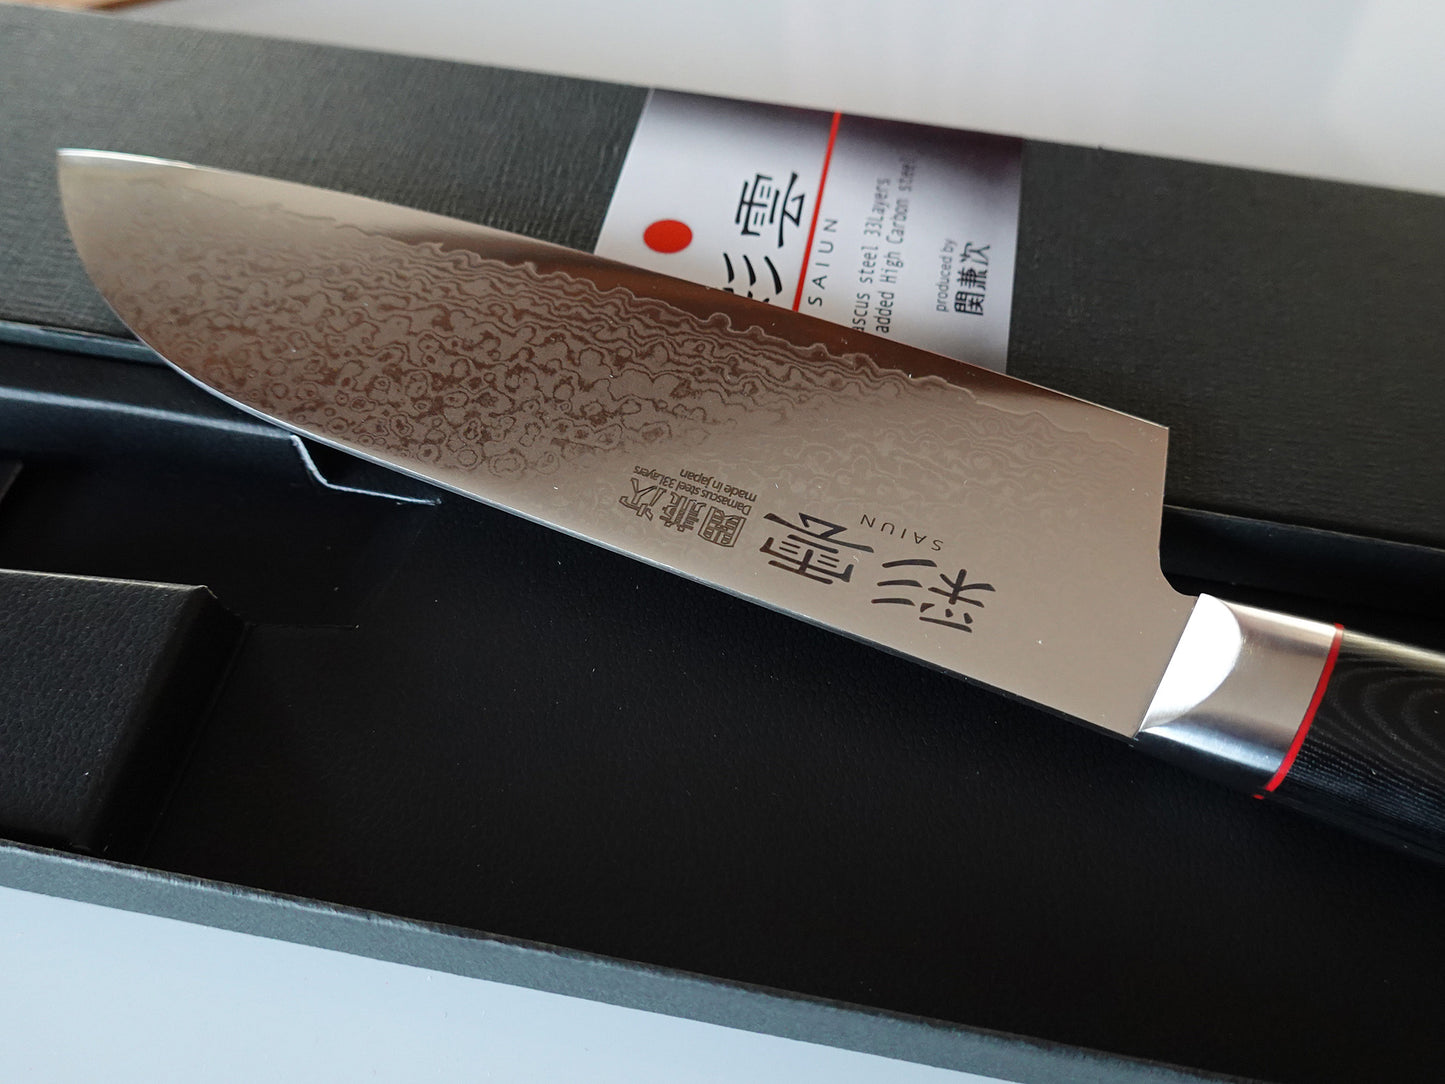 Cuchillo Japonés Santoku Damasco Saiun 170mm - Te lo Afilo